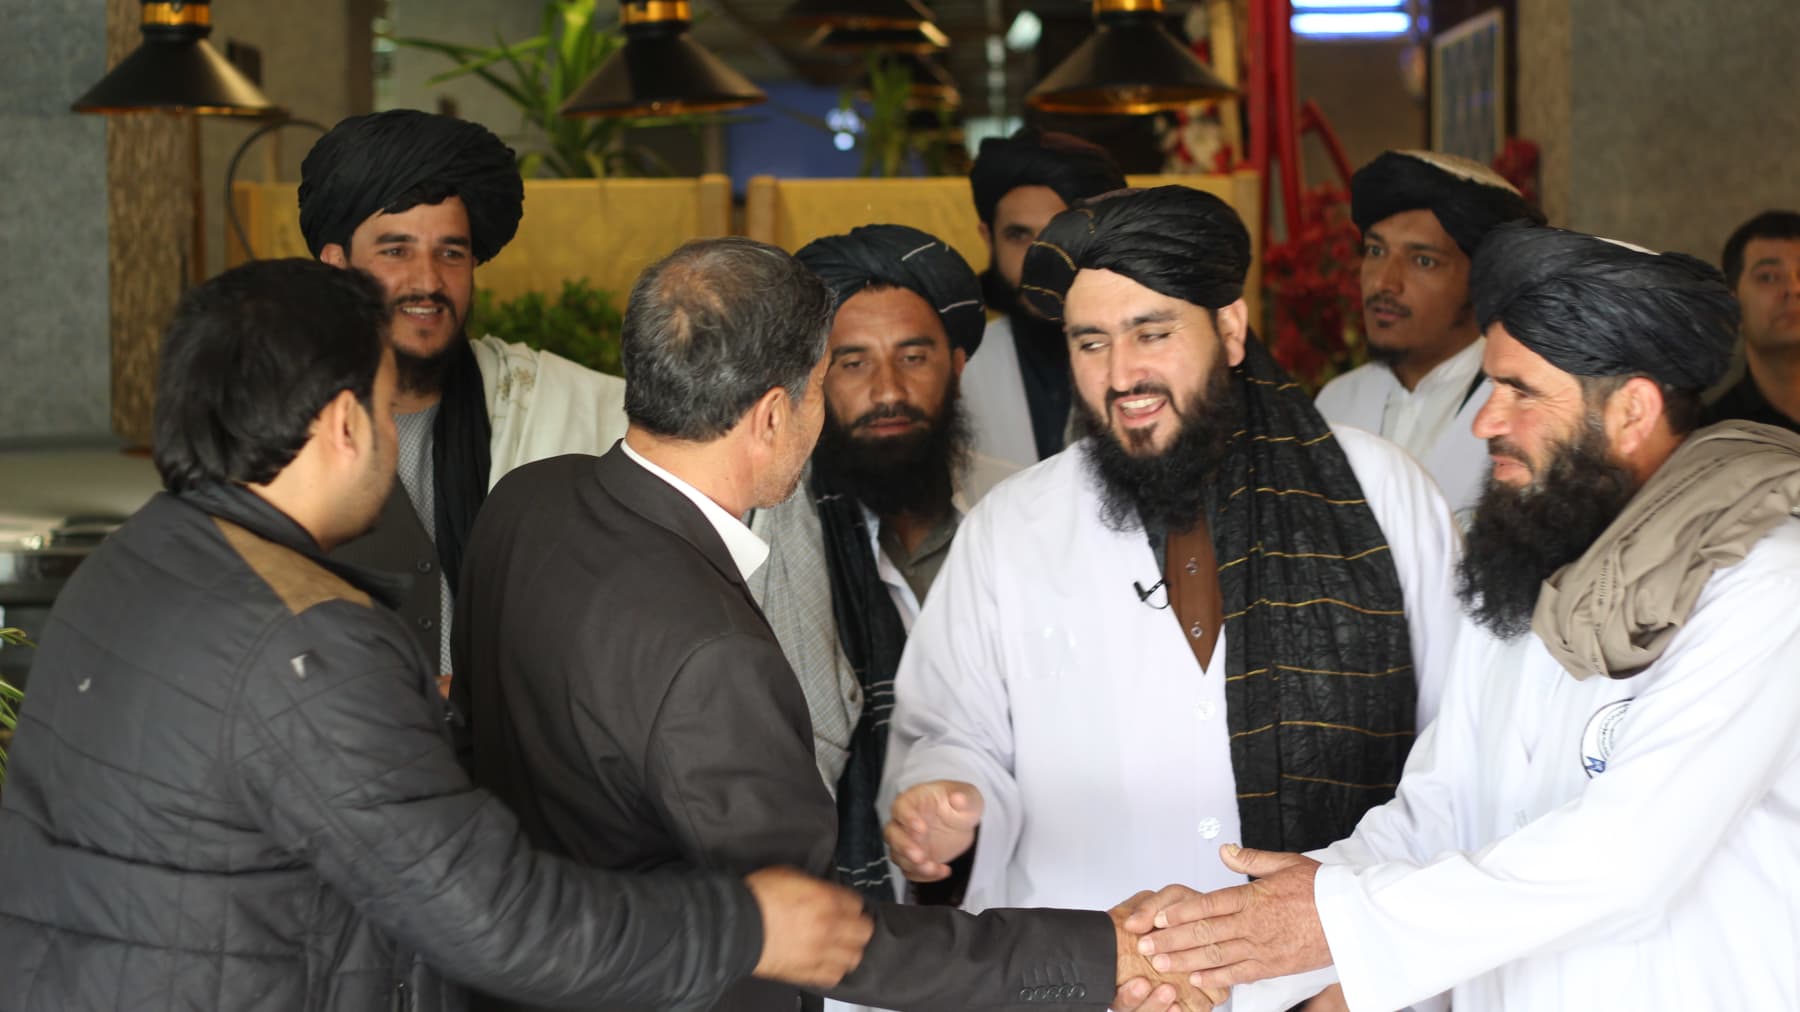 Talibanit otetaan korostetun ystävällisesti vastaan ravintolassa Kabulissa.